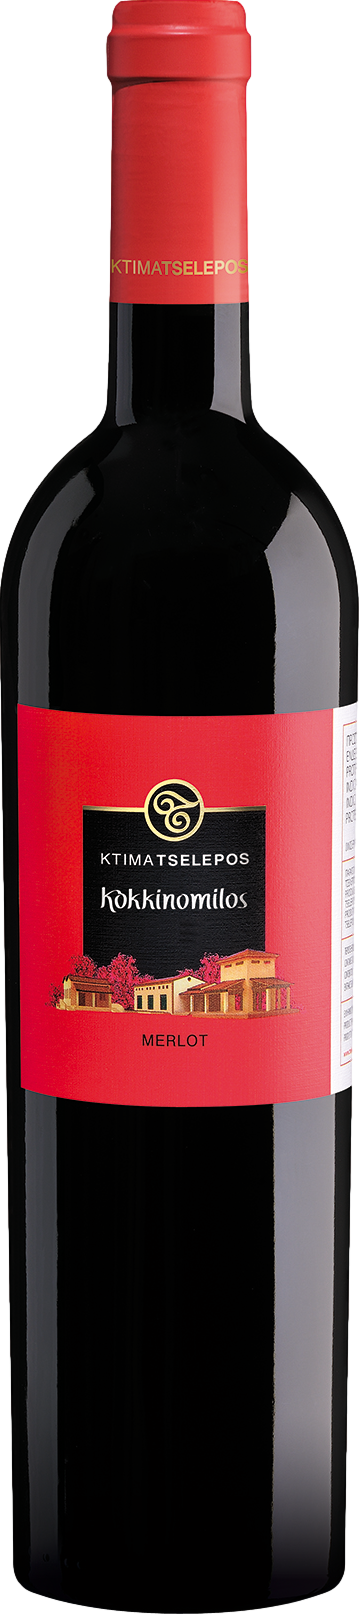 Tselepos Kokkinomilos Merlot 2019 Červené 15.0% 0.75 l